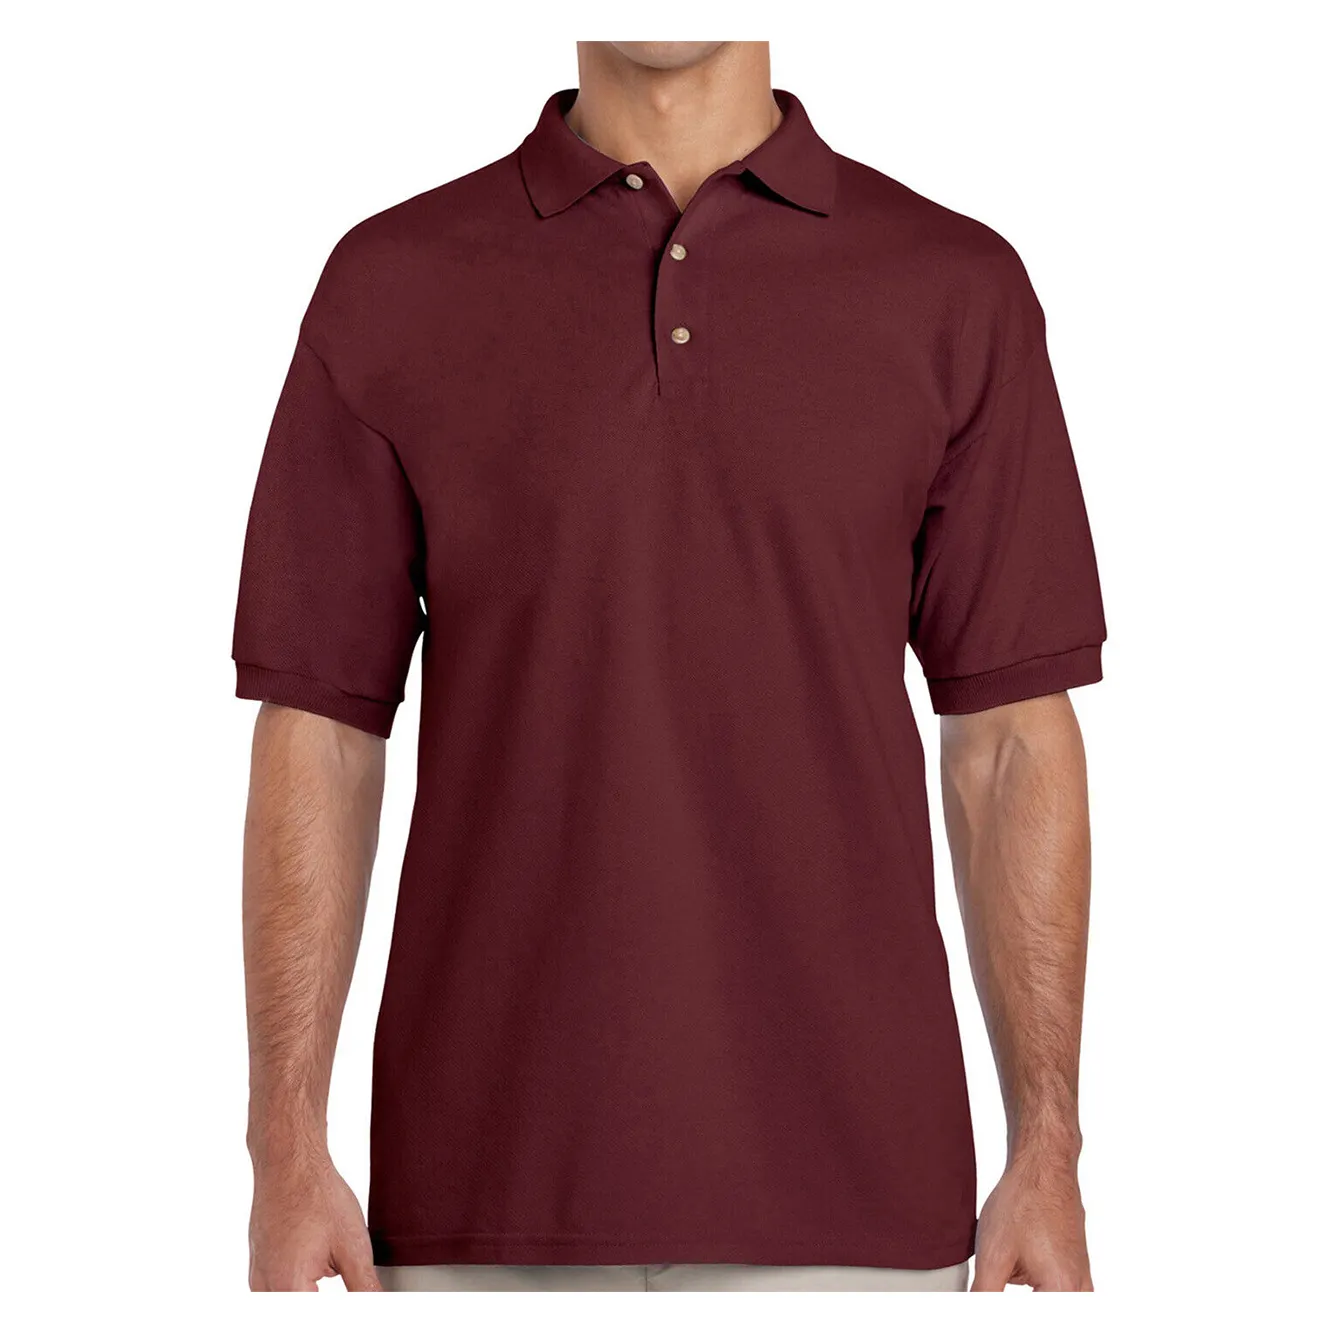 Roupas masculinas por atacado, camiseta polo italiana de manga curta com estampa piquet, tecido 100% algodão, ajuste regular